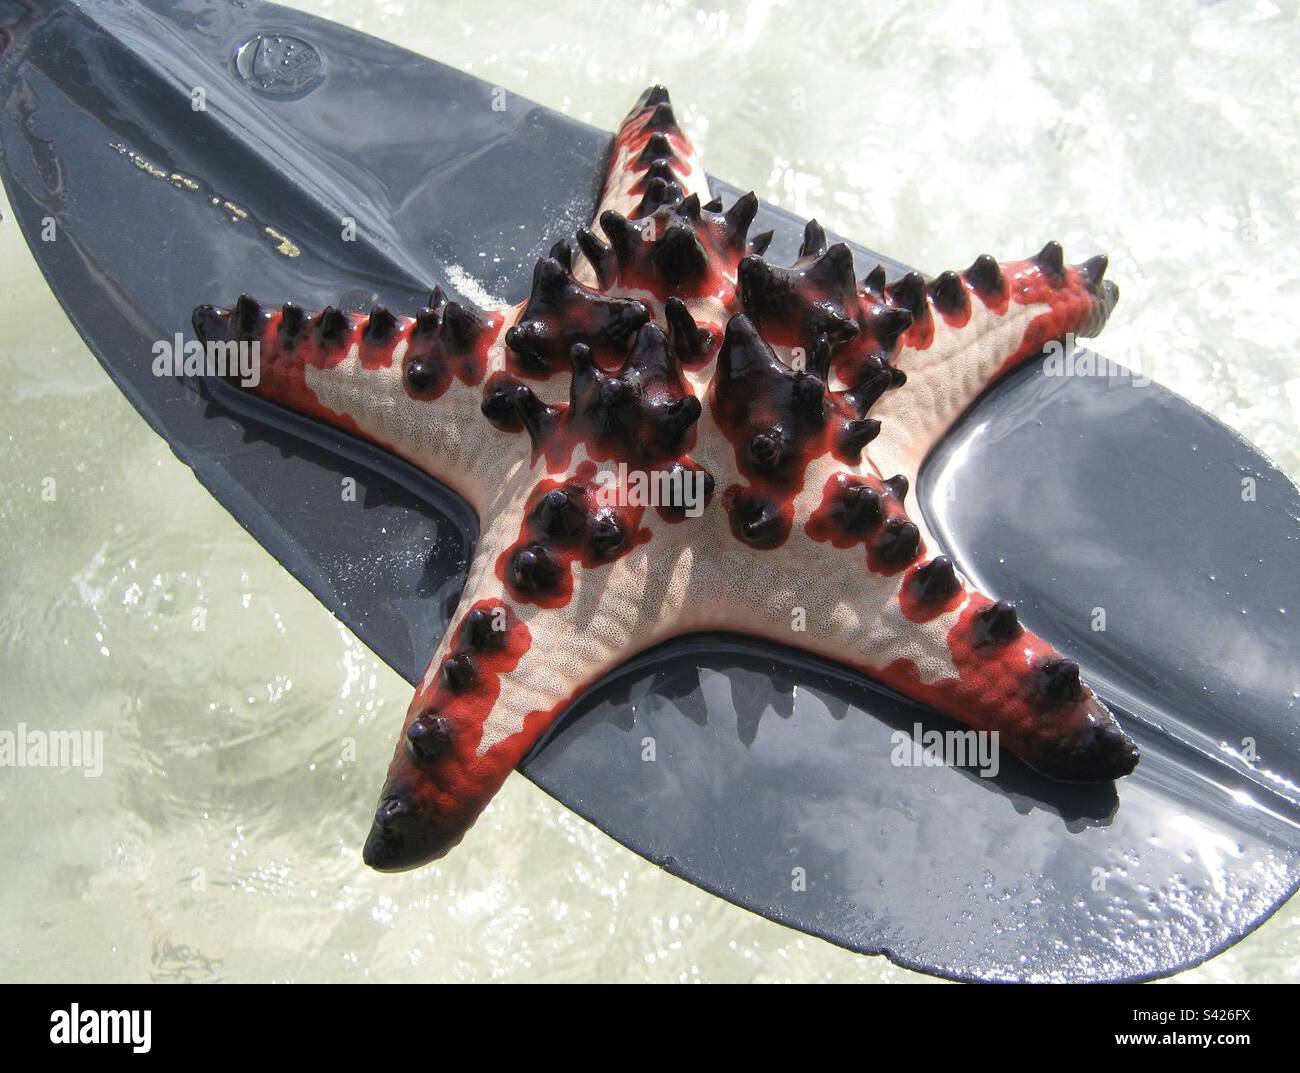 The ‘Horned Starfish’ in Vanuatu. Stock Photo